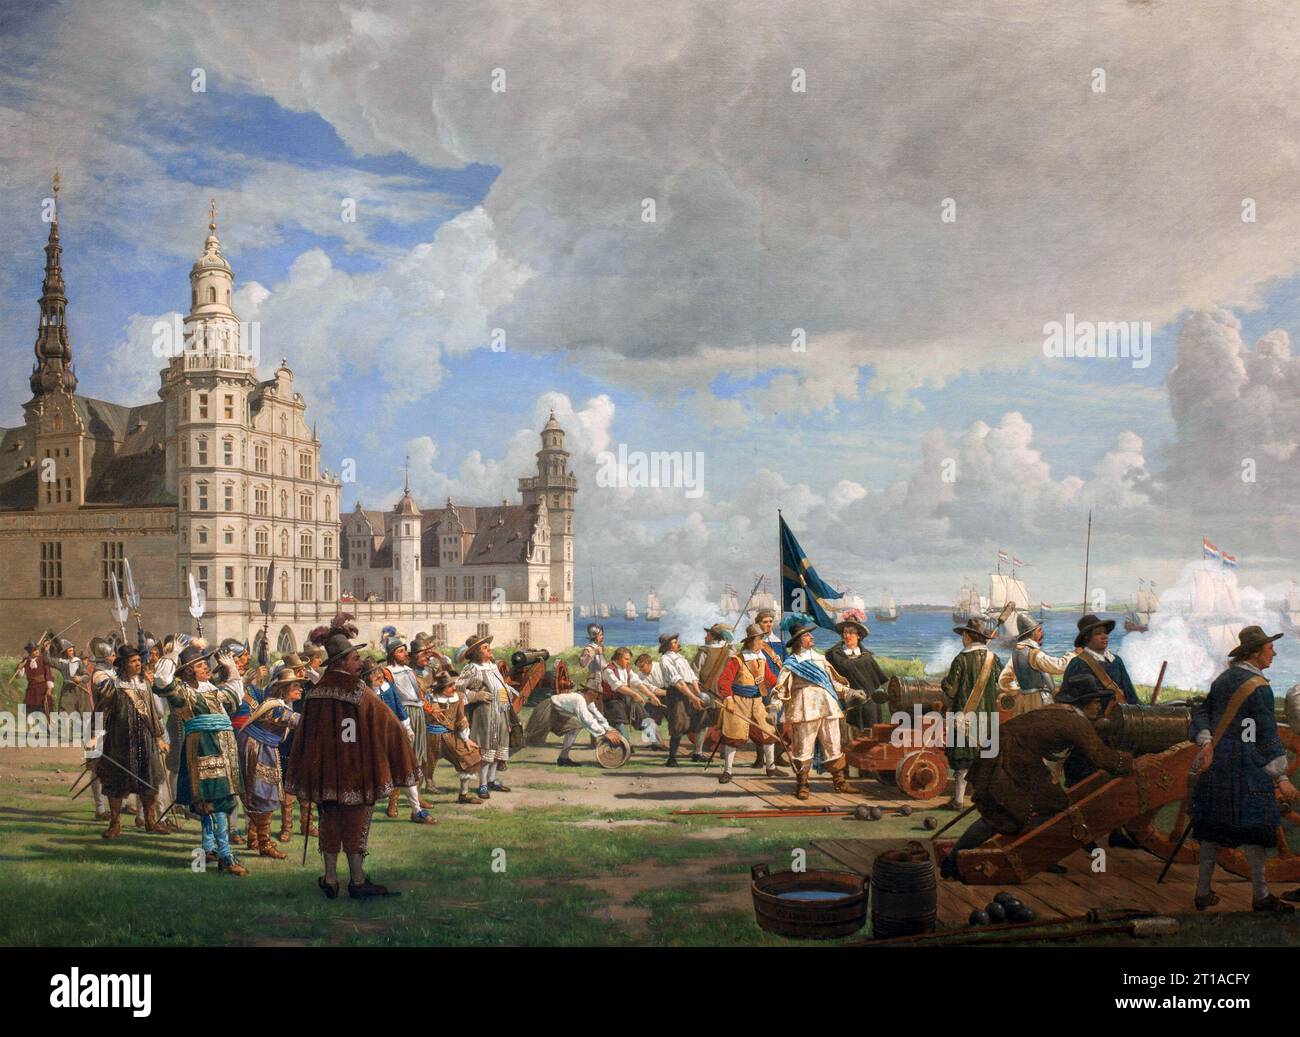 BATALLA DEL SONIDO 8 DE NOVIEMBRE DE 1658. La flota holandesa entra en el Sound pasando por el castillo de Kronborg, vigilado por el rey Carlos X Gustav de Suecia, en su camino para aliviar Copenhague. Pintura de Frederik Lund (1872) Foto de stock